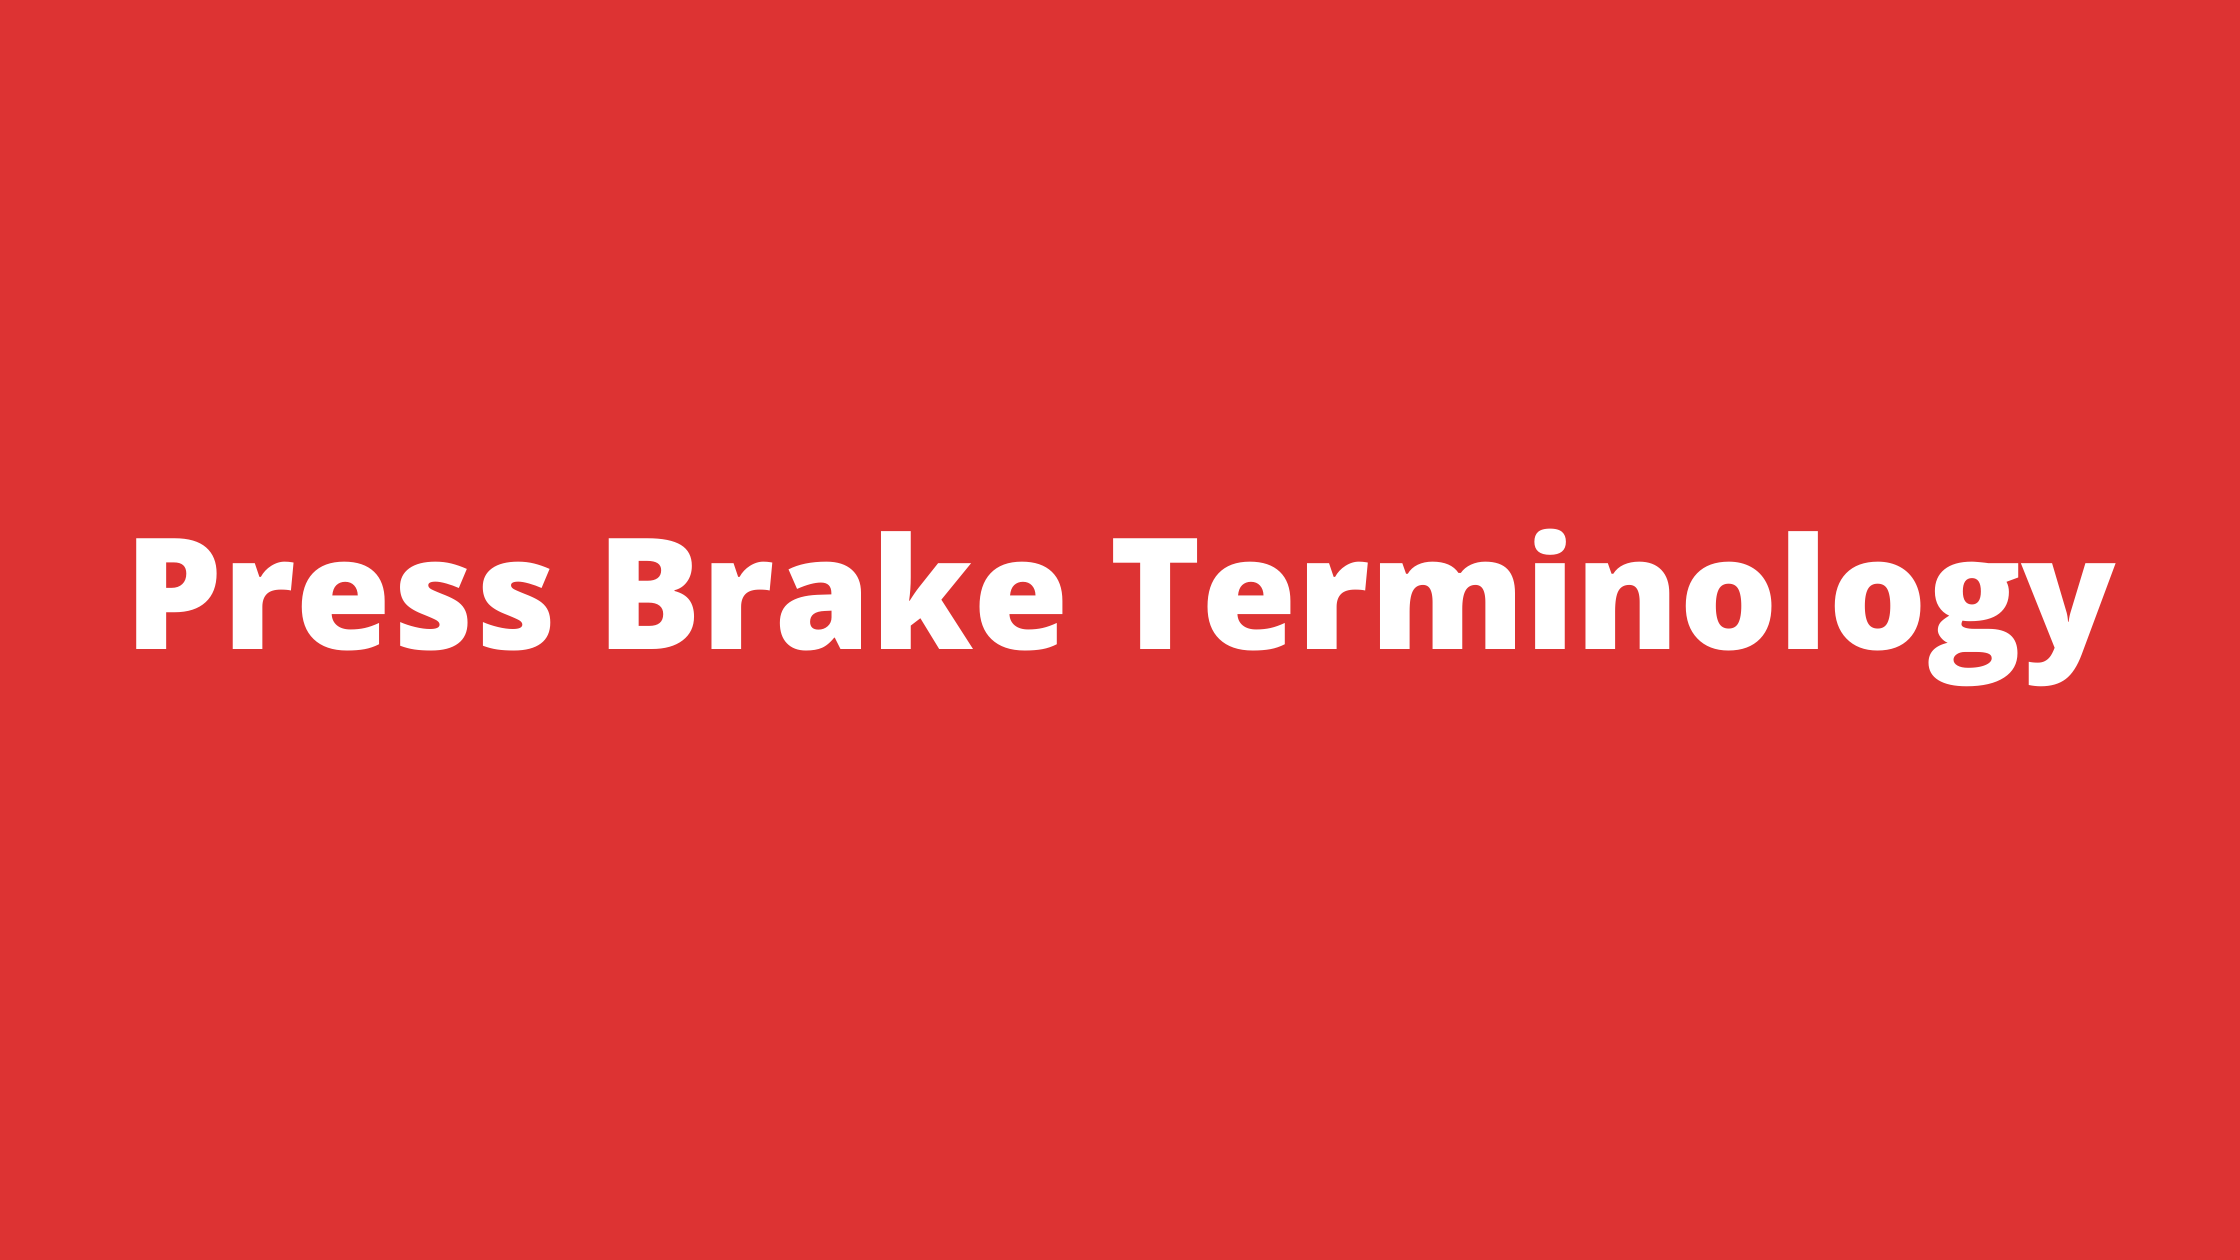 Press Brake Terminology